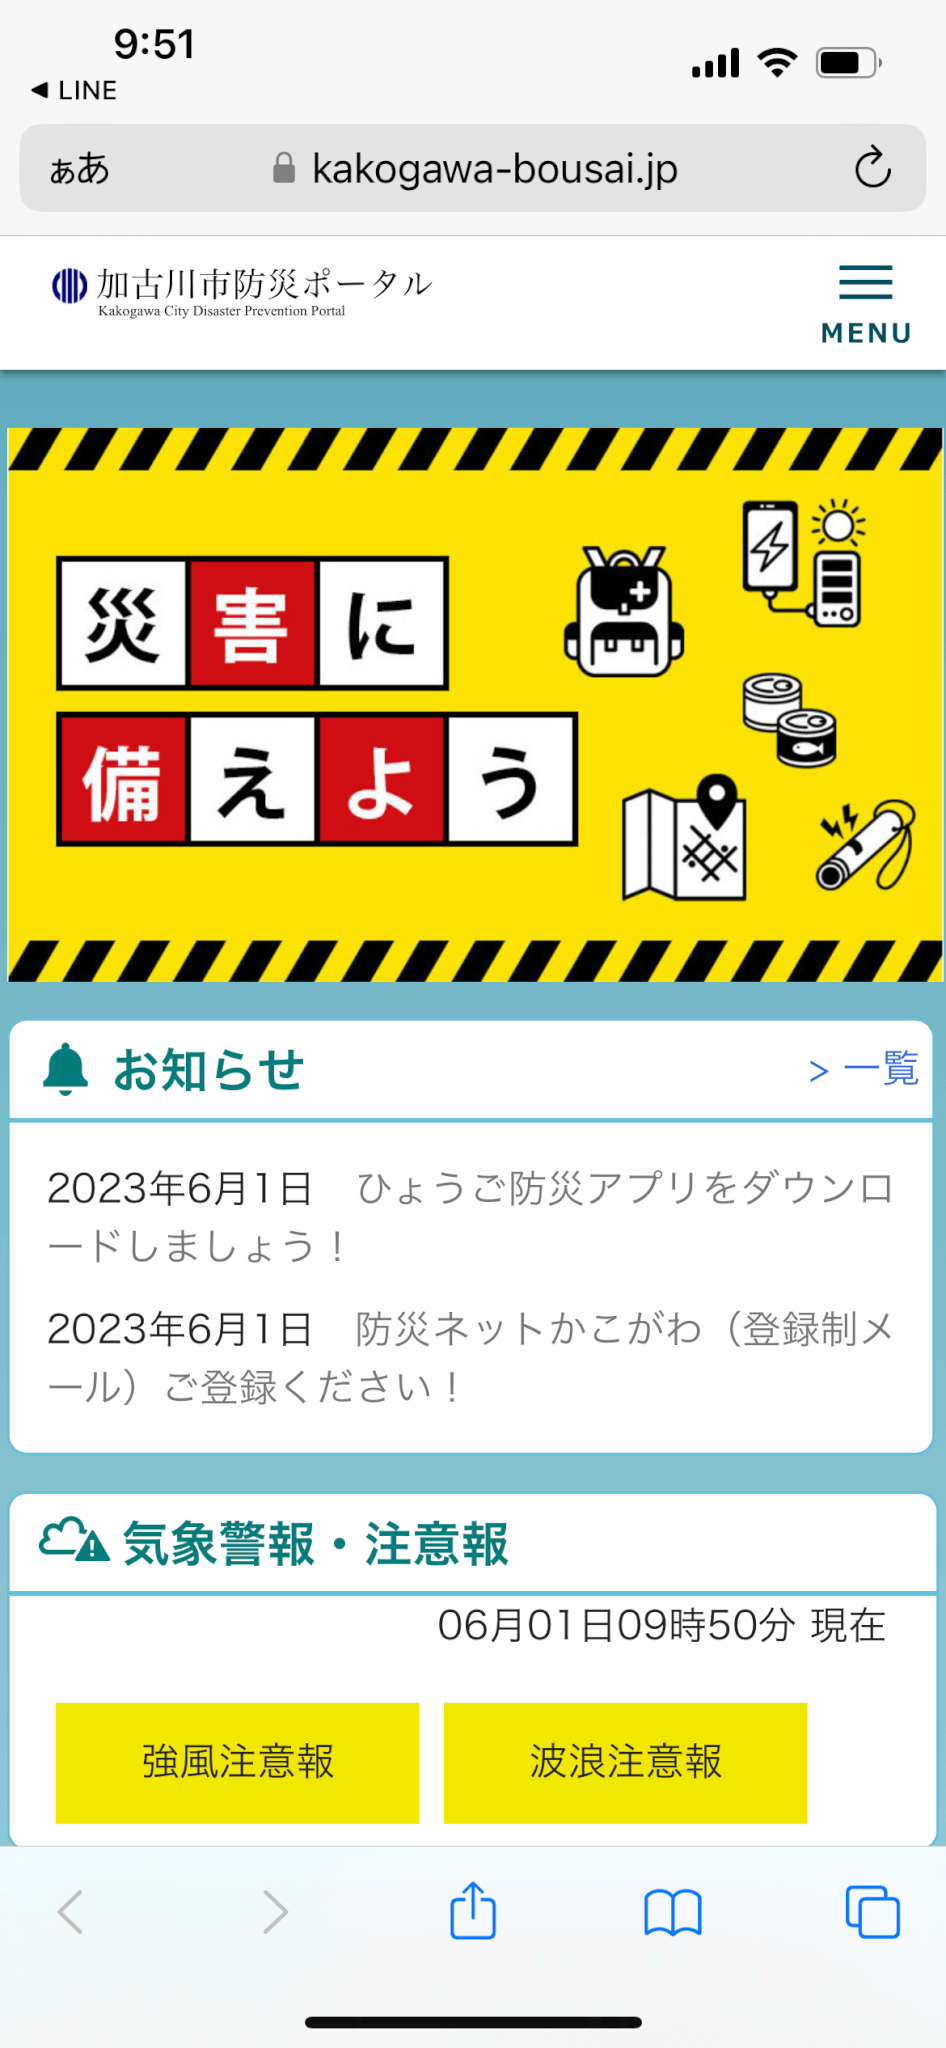 加古川市防災ポータルスマホ版トップページキャプチャ